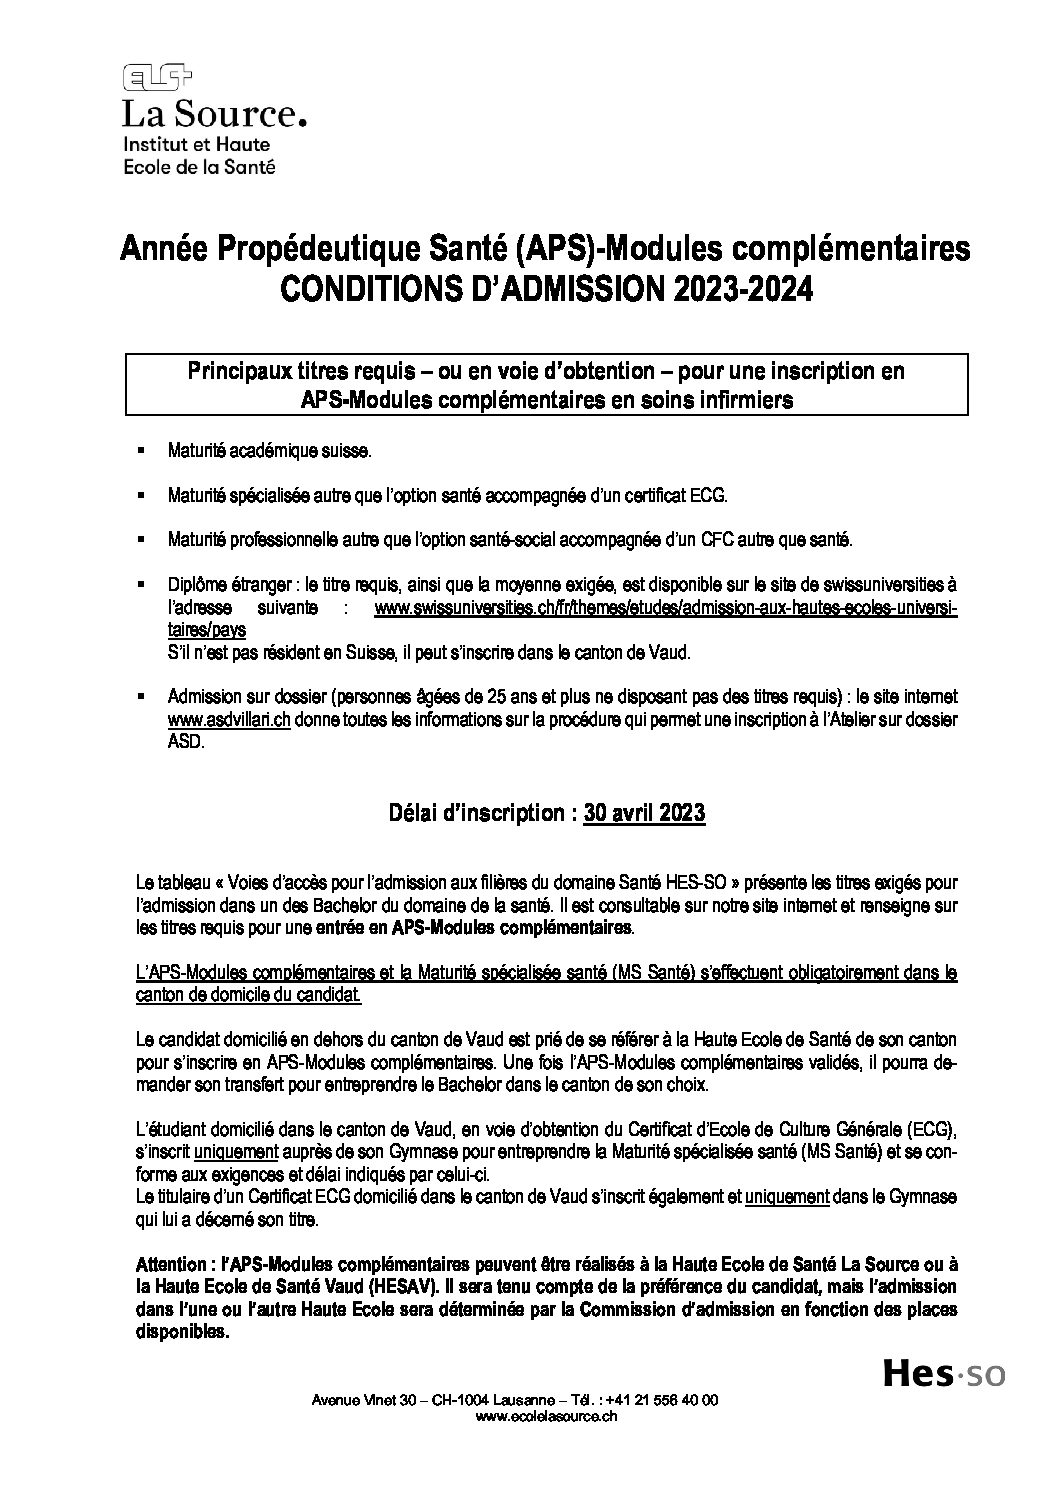 ADM_APS_20232024_Conditions d'admission_11.2022 Institut et Haute